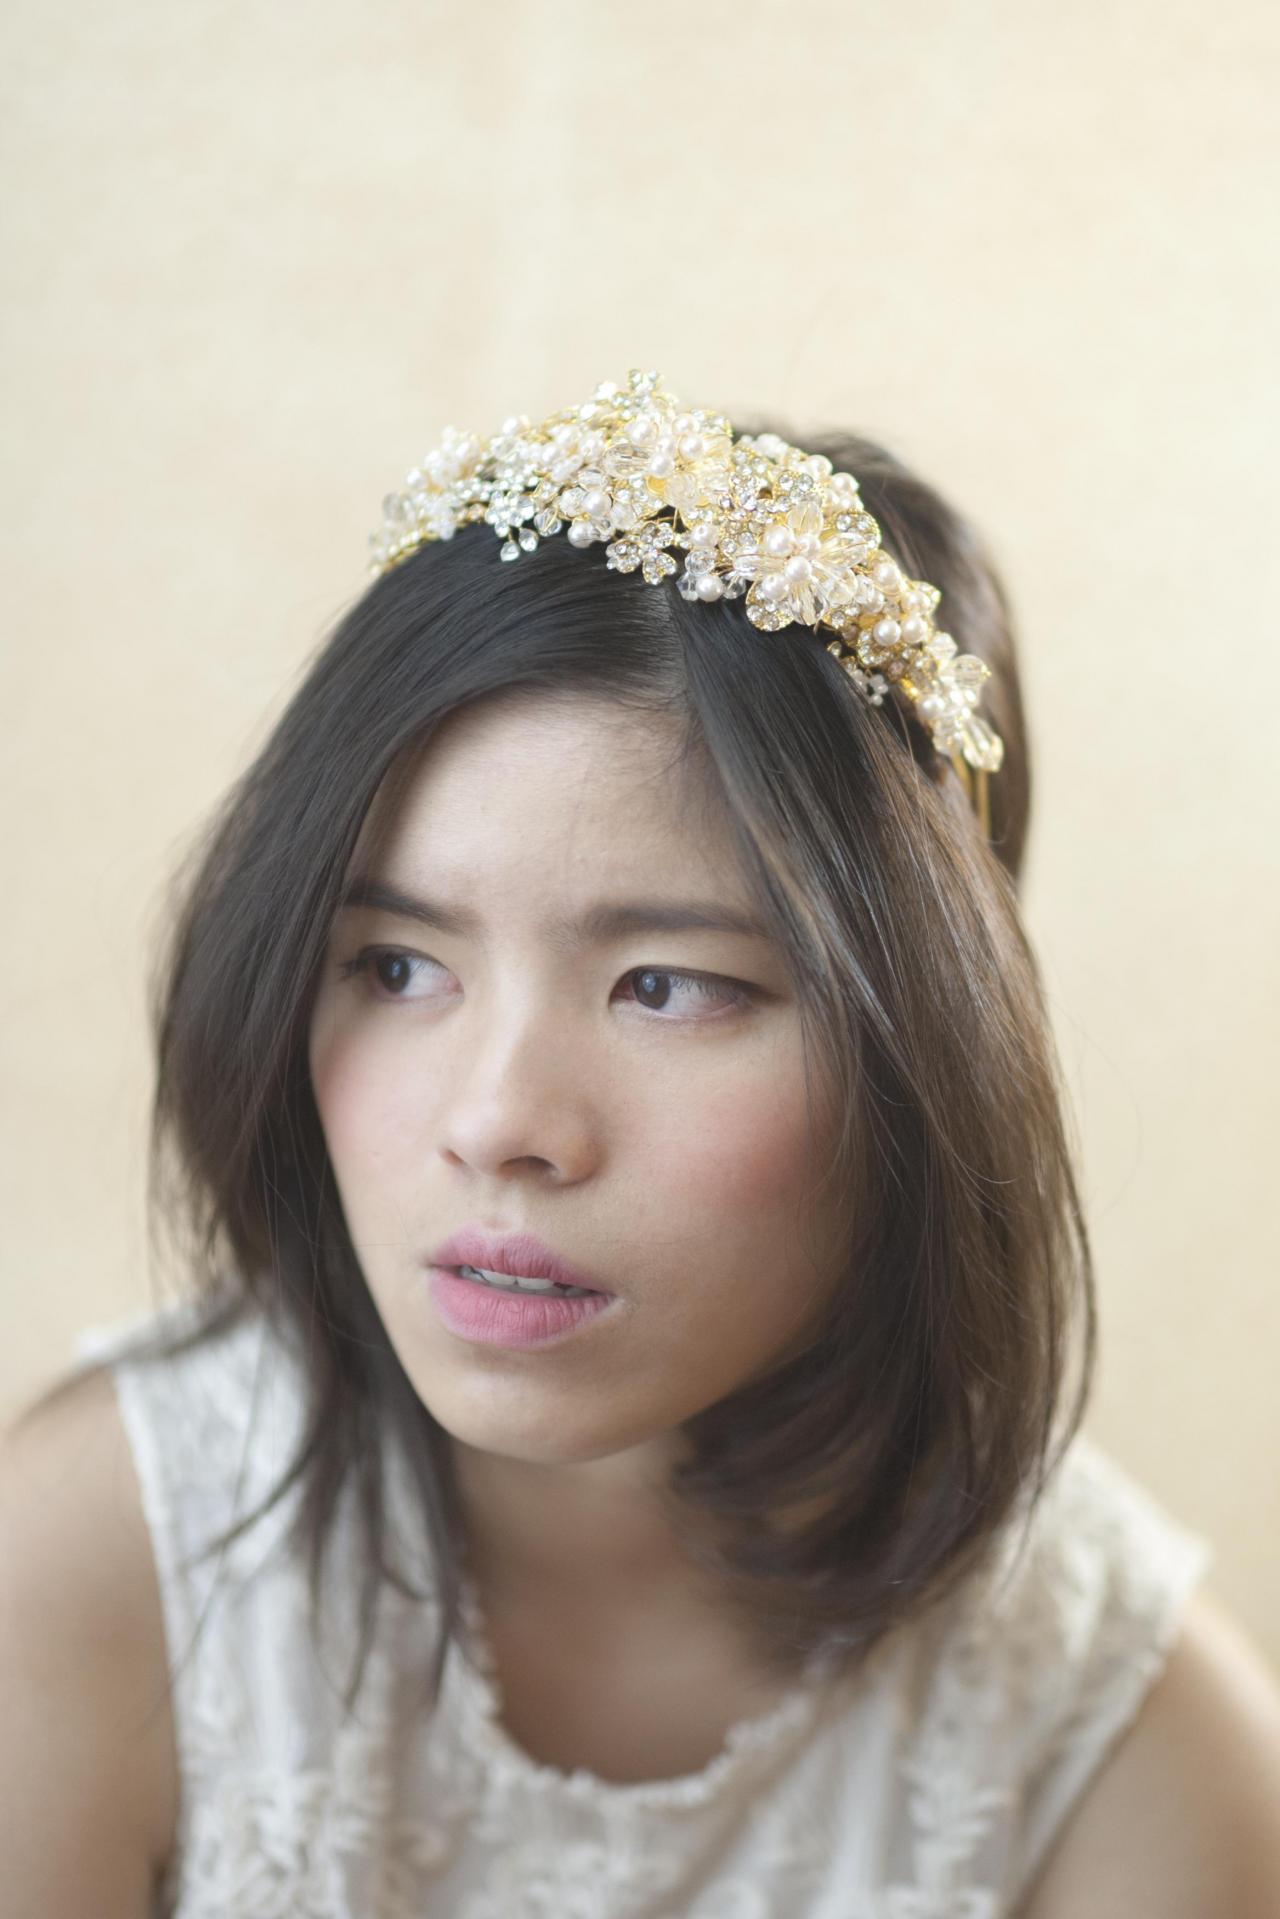 Fancy Wedding Headpiece - Bridal Headpiece - Bridal Hair Accessory - Gold Flower Crown